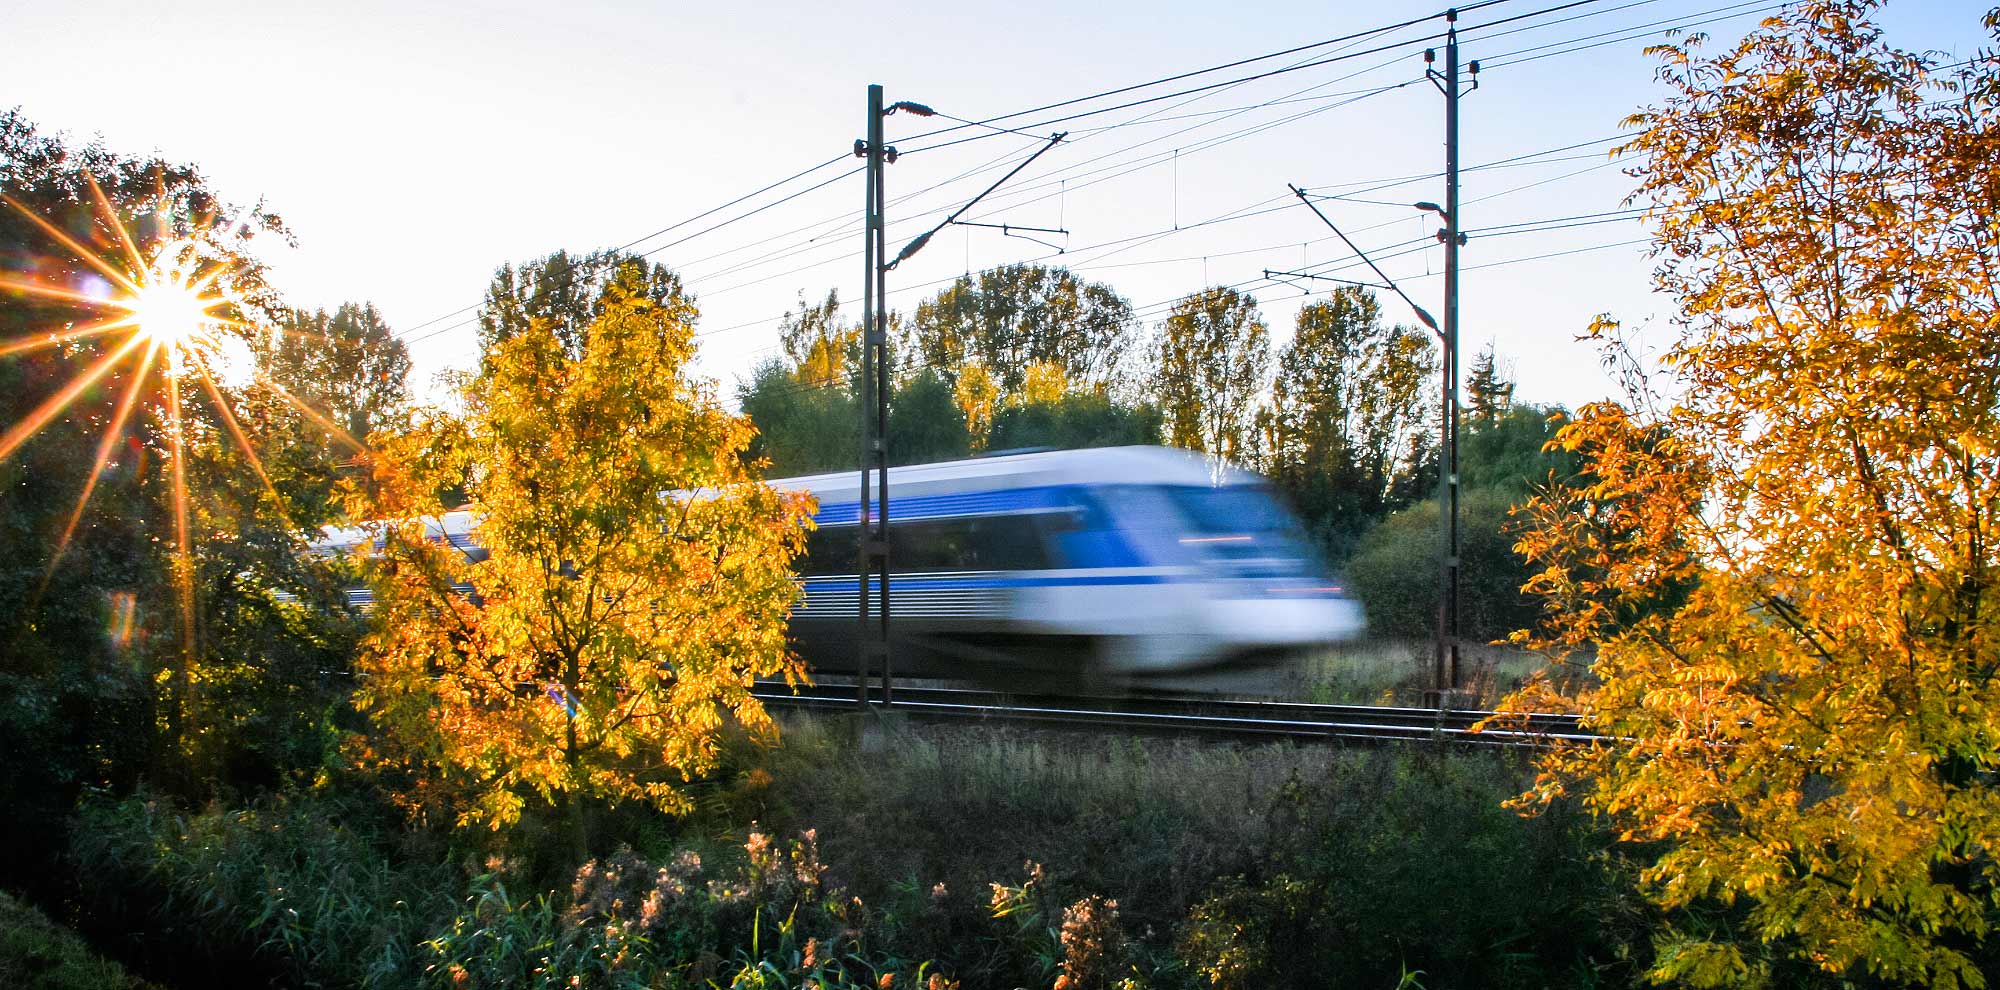 Bild: Ett X2-tåg som är suddigt på grund av hastigheten. Foto Frederik Tellerup.